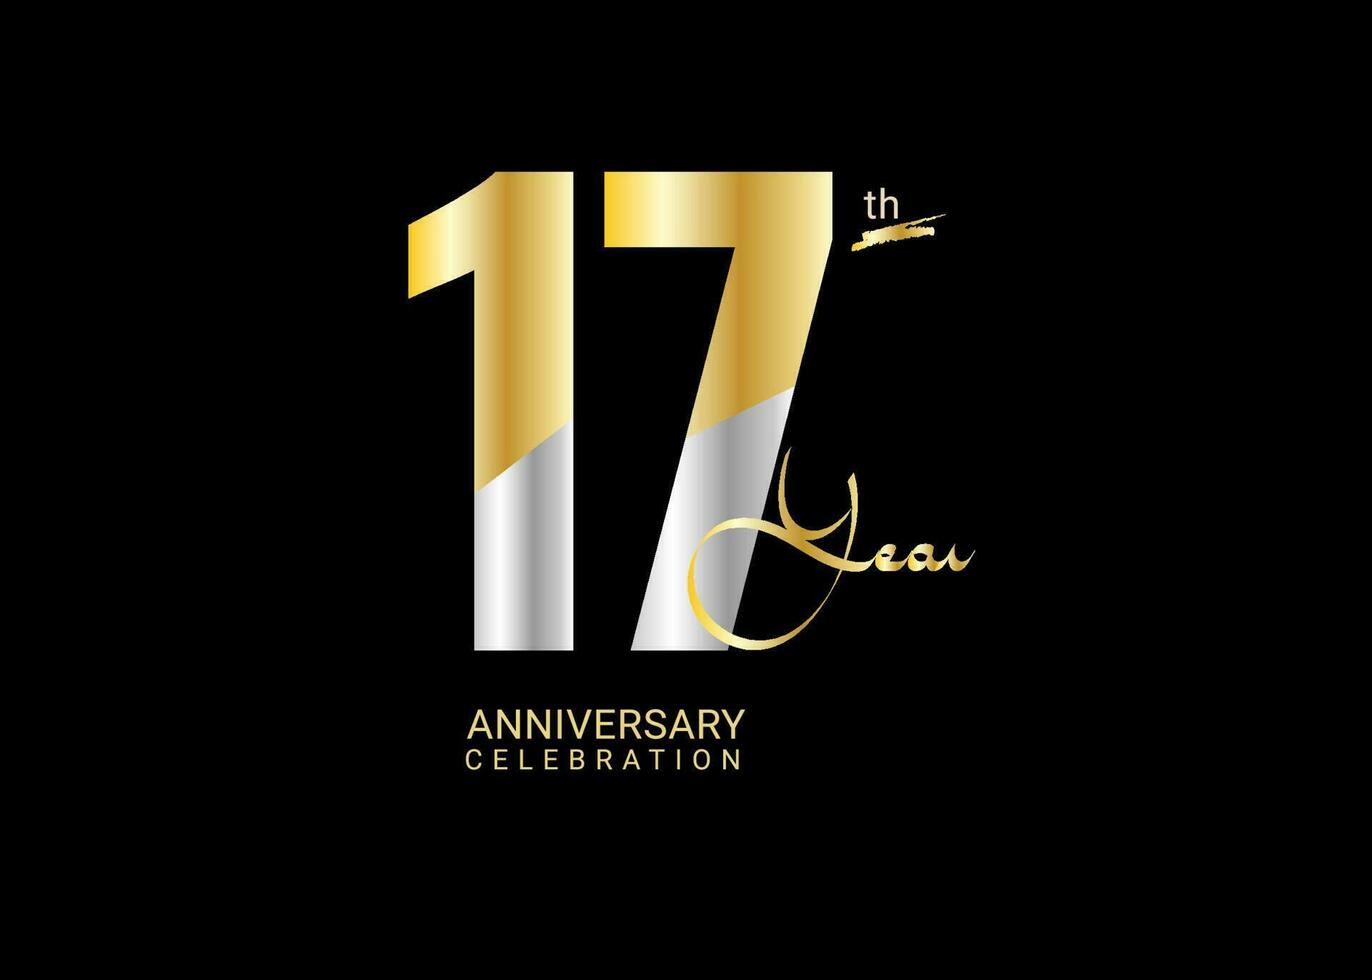 17 år årsdag firande guld och silver- vektor mall, 17 siffra logotyp design, 17:e födelsedag logotyp, logotyp årsdag, vektor årsdag för firande, affisch, inbjudan kort